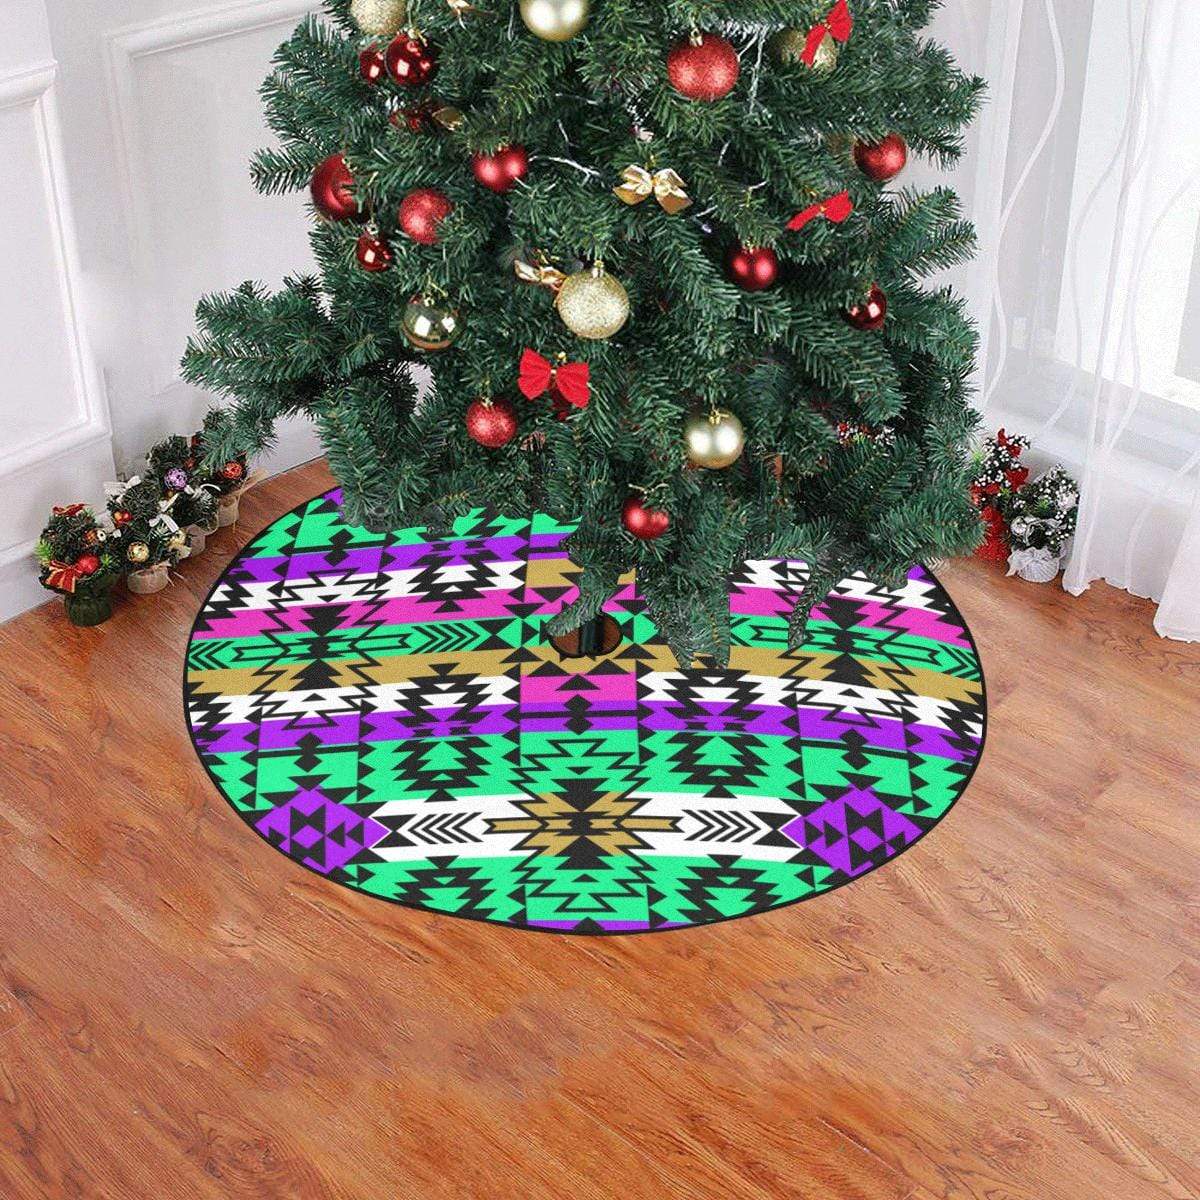 Final Grand Entry Christmas Tree Skirt 47" x 47" Christmas Tree Skirt e-joyer 